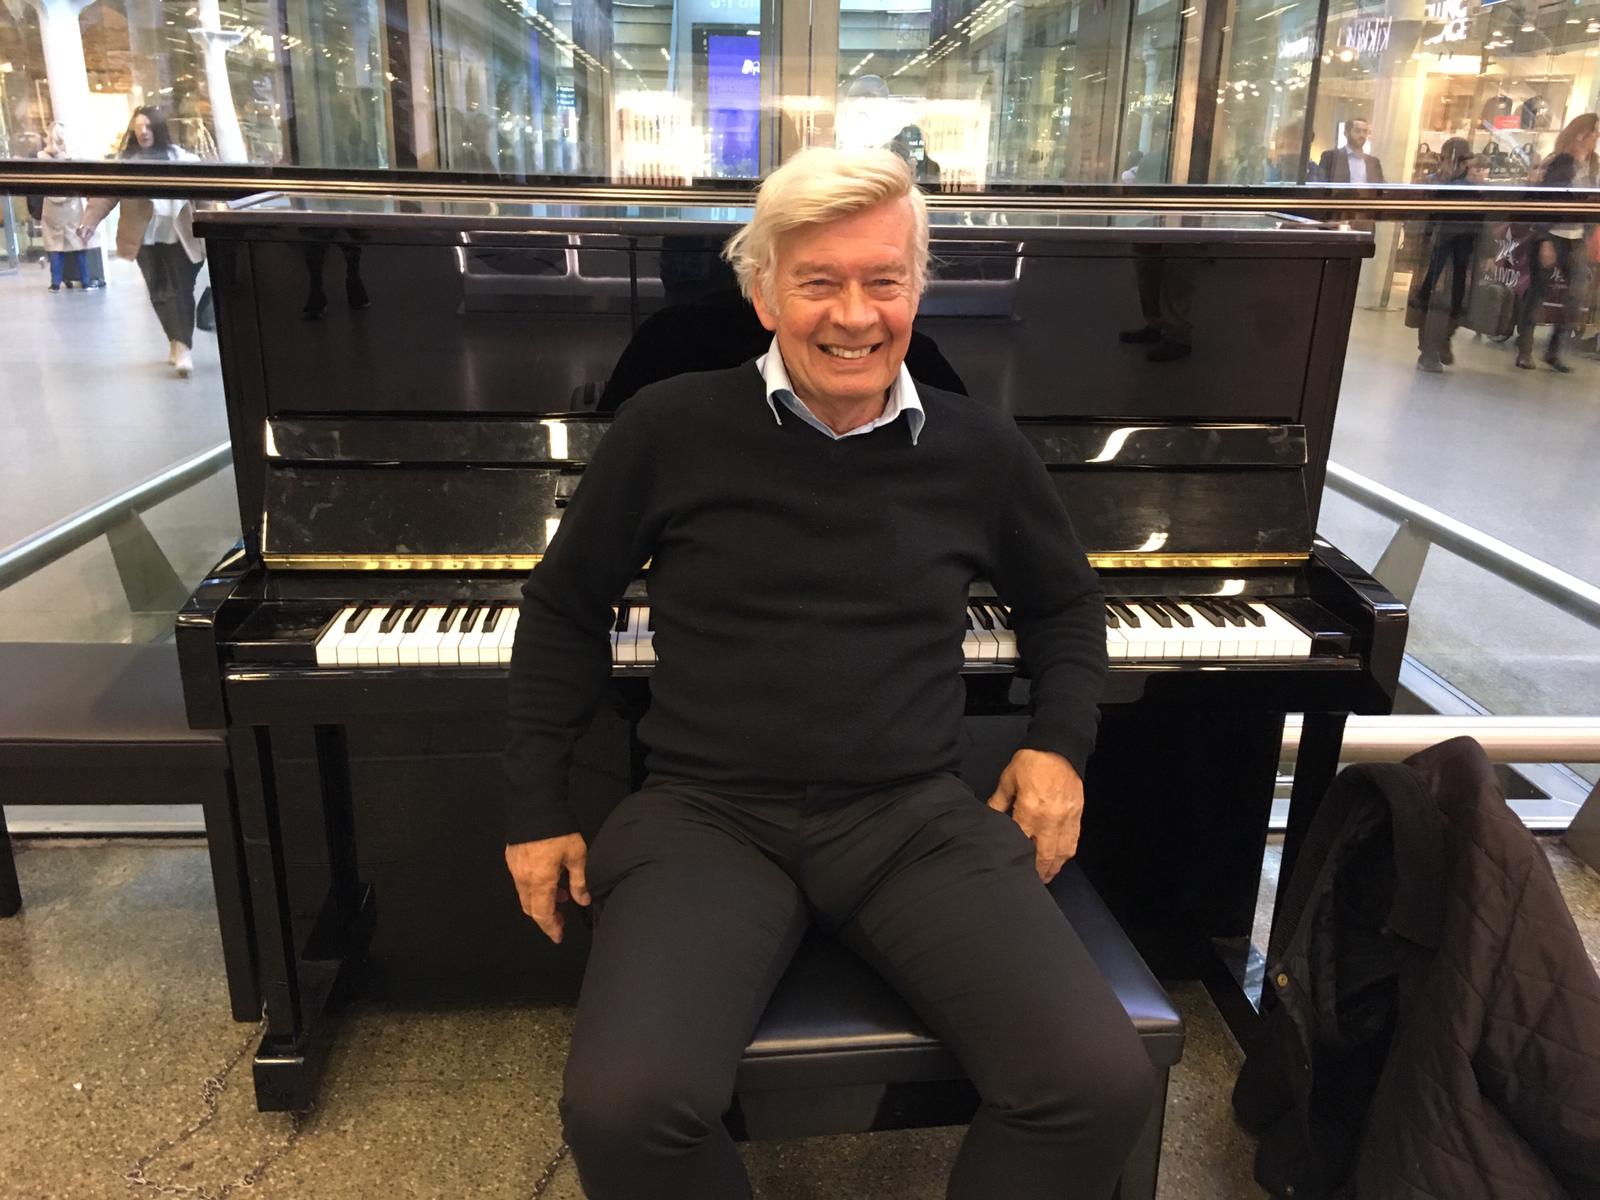 SCHMULL bij de ELTON JOHN PIANO in het St. PANCRAS STATION te LONDEN